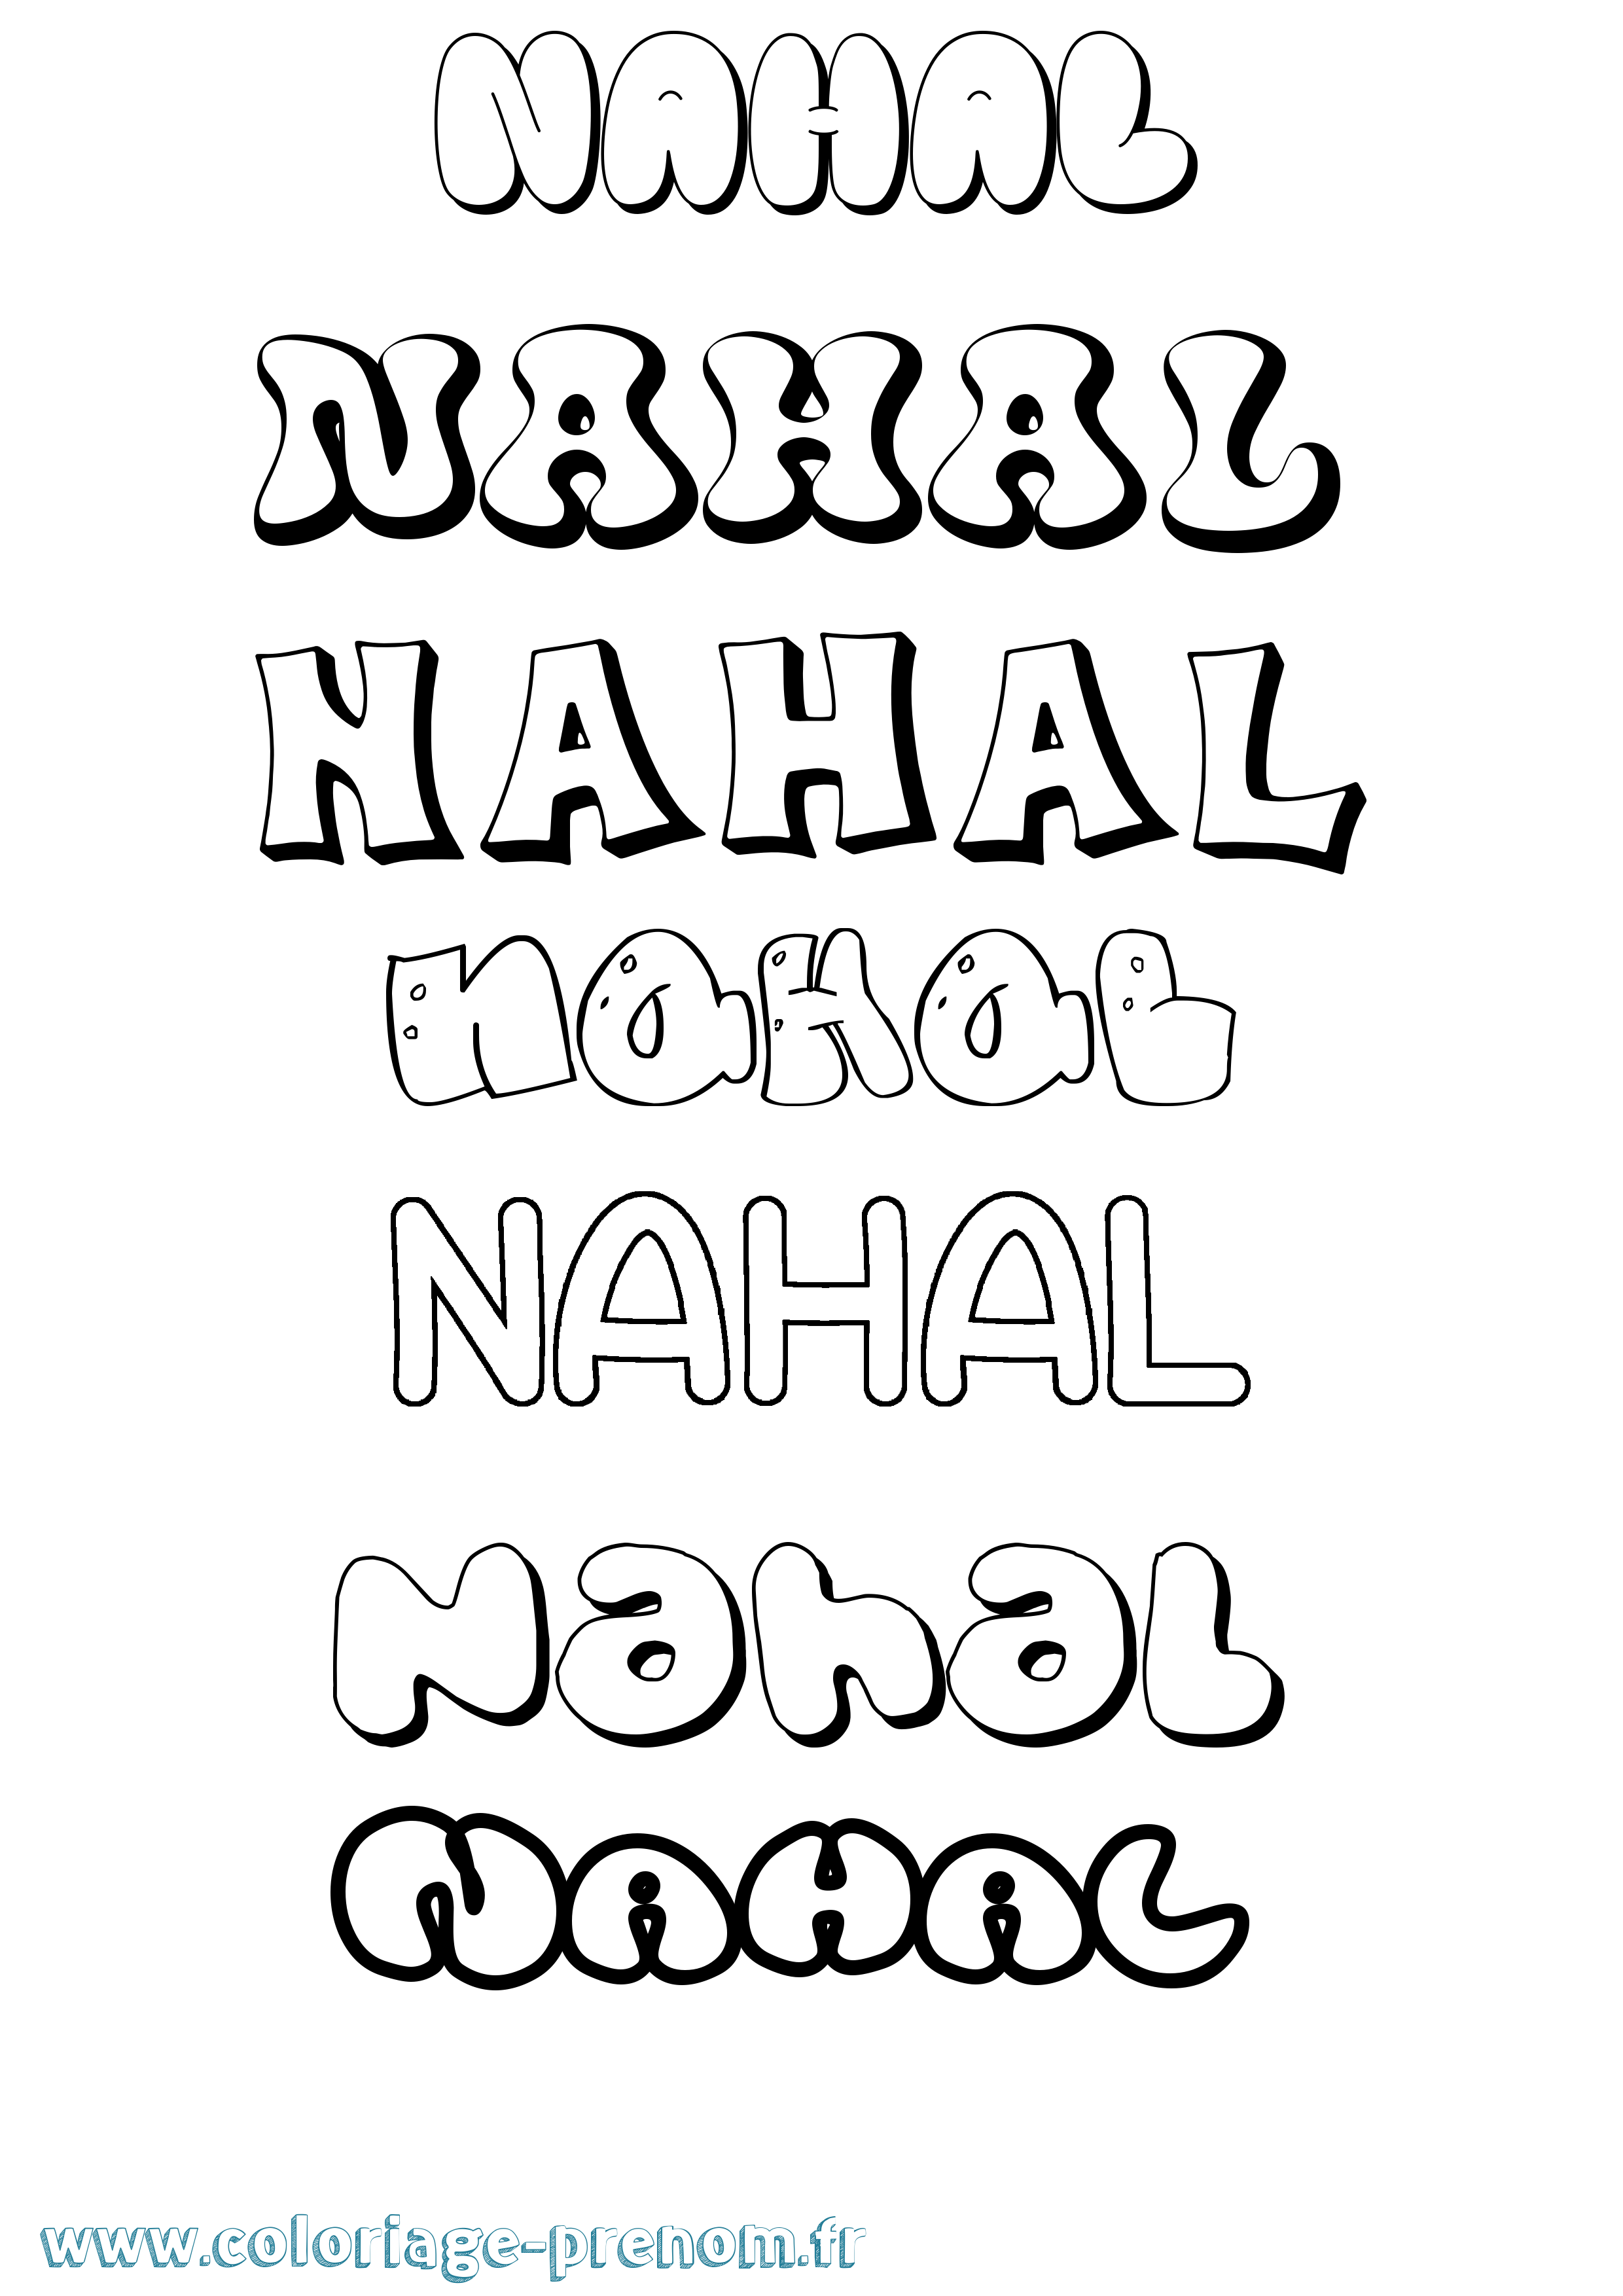 Coloriage prénom Nahal Bubble